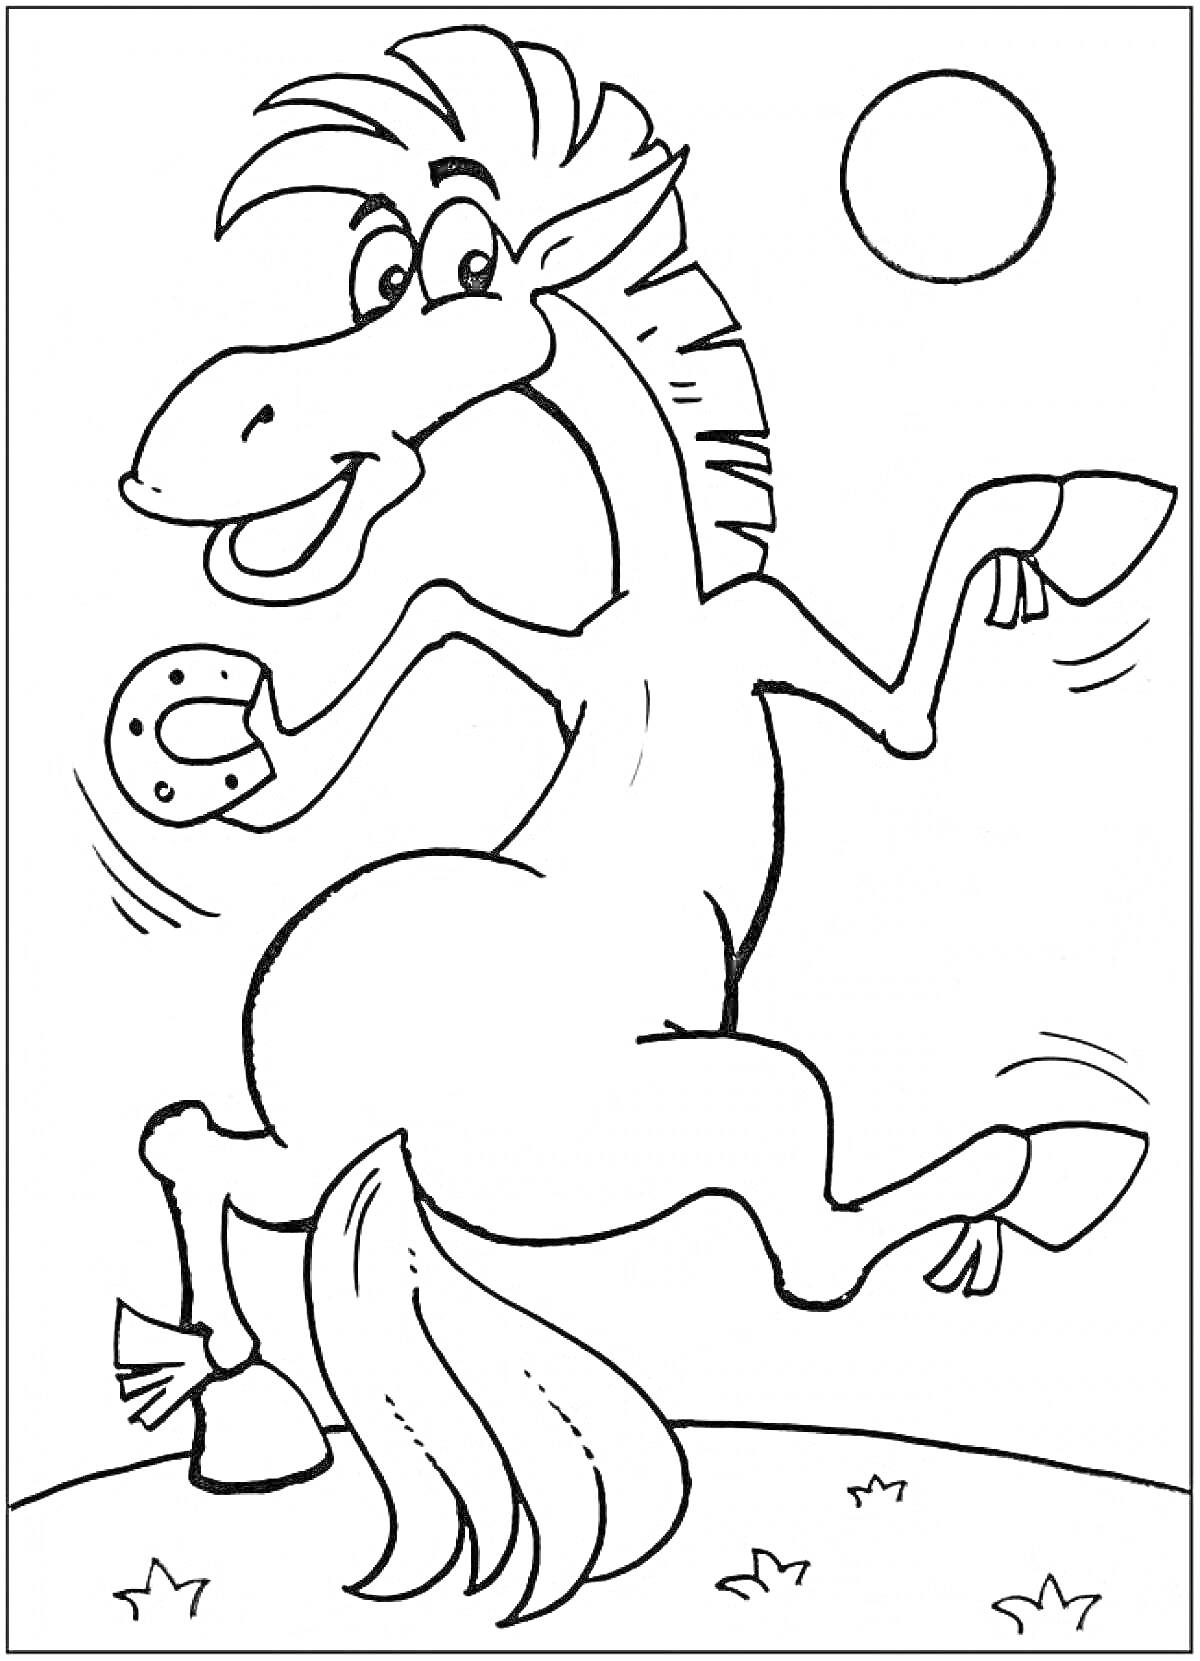 Лошадь из мультфильма на лугу, держащая подкову, на заднем плане солнце